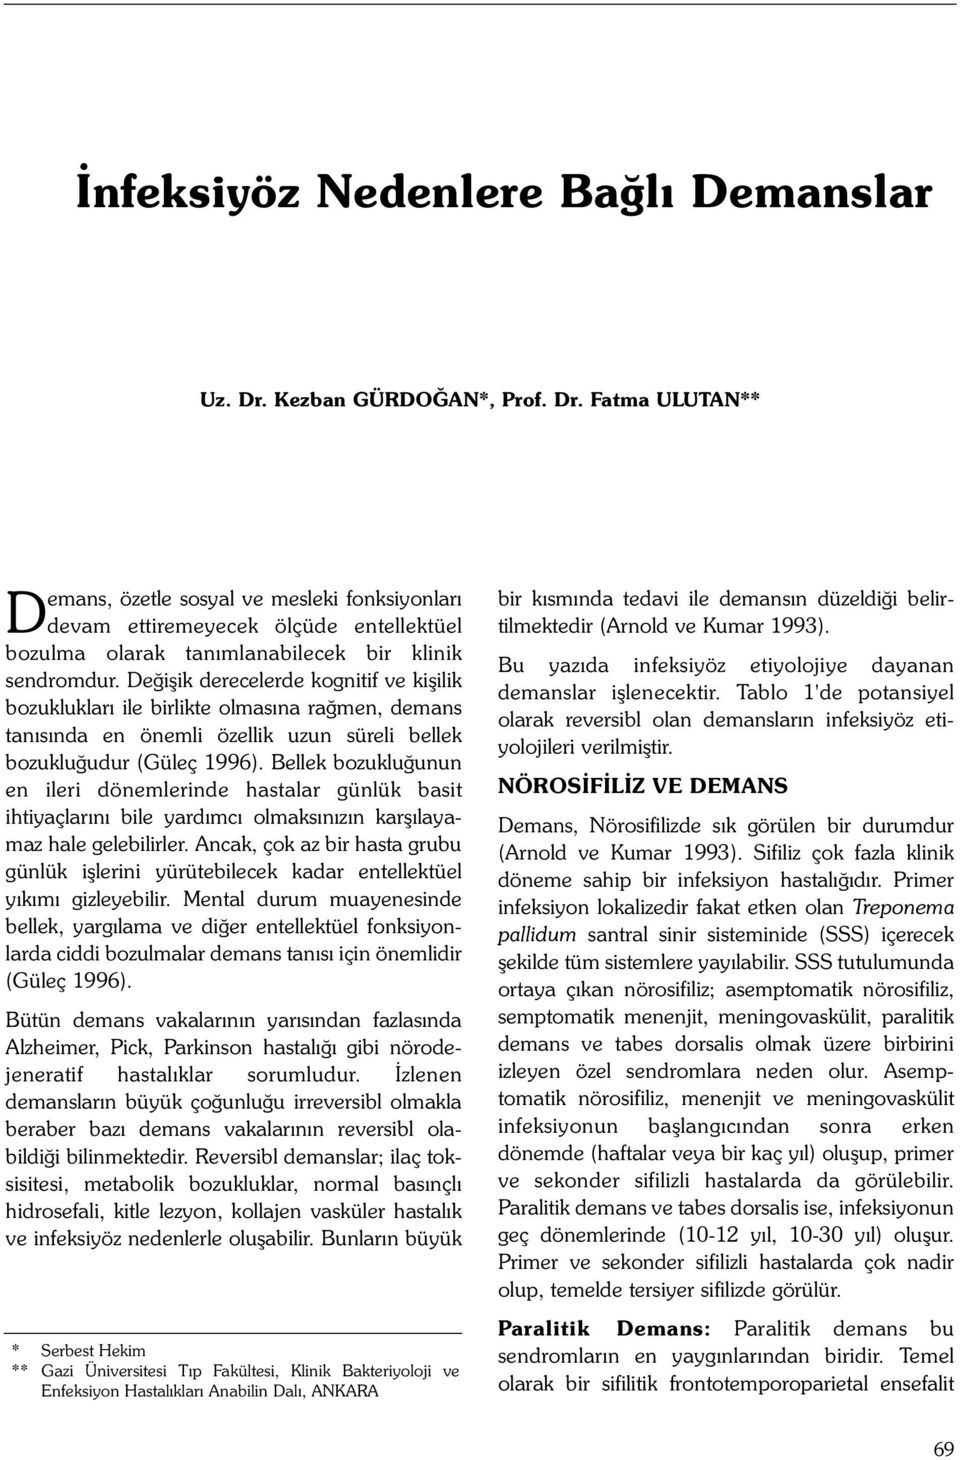 Deðiþik derecelerde kognitif ve kiþilik bozukluklarý ile birlikte olmasýna raðmen, demans tanýsýnda en önemli özellik uzun süreli bellek bozukluðudur (Güleç 1996).